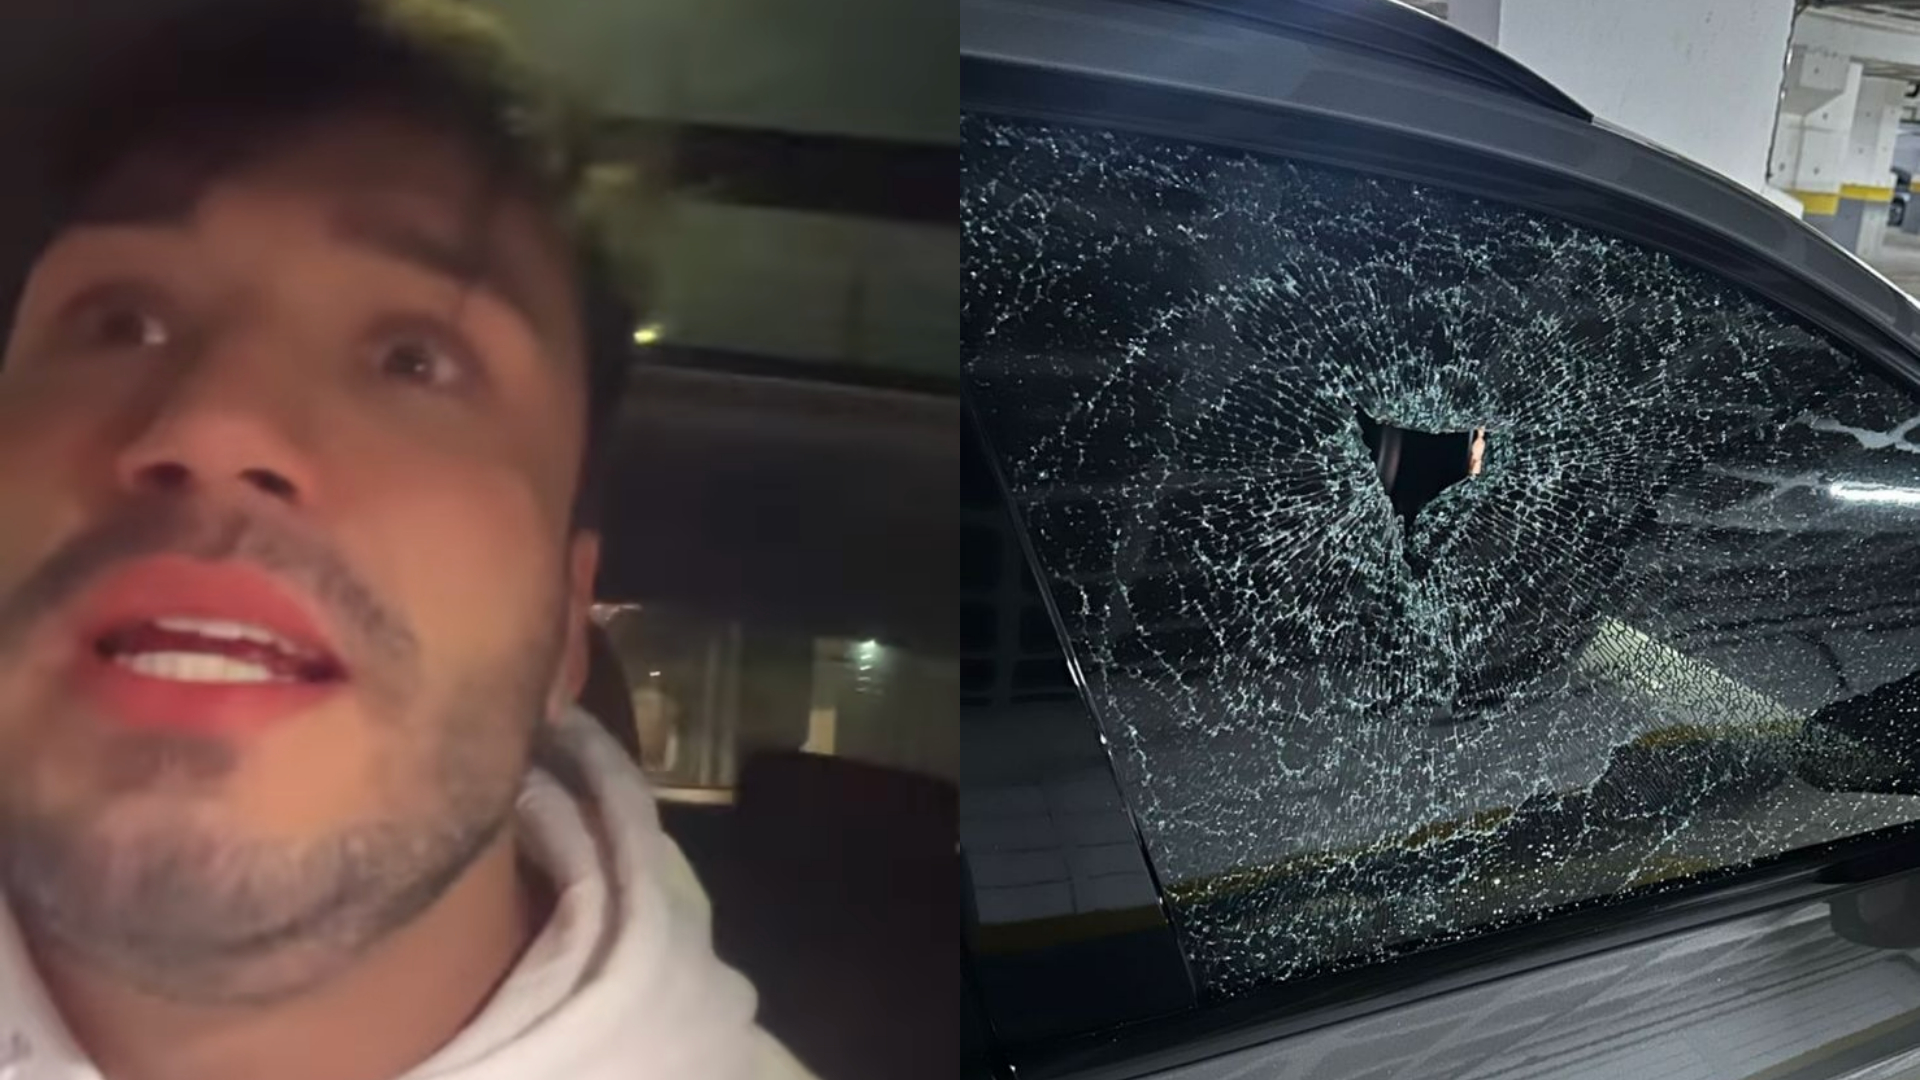 Lucas Viana reage a assalto e tem carro atingido por tiros: “Milagre”; assista